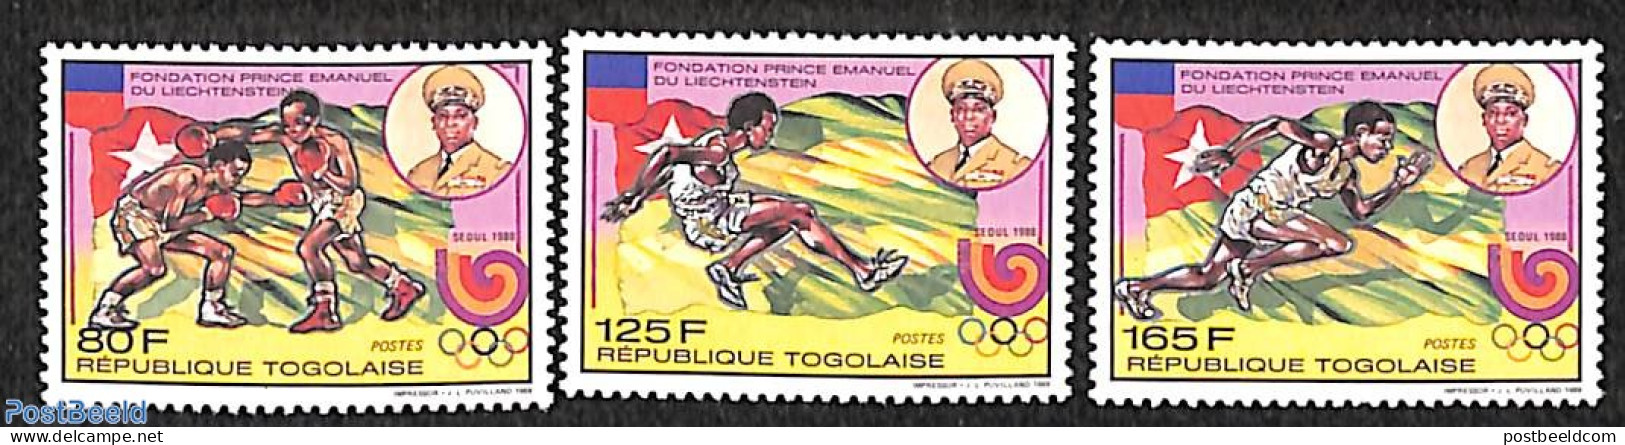 Togo 1989 Olympic Games Seoul 3v M/s, Mint NH, Sport - Athletics - Boxing - Olympic Games - Athletics